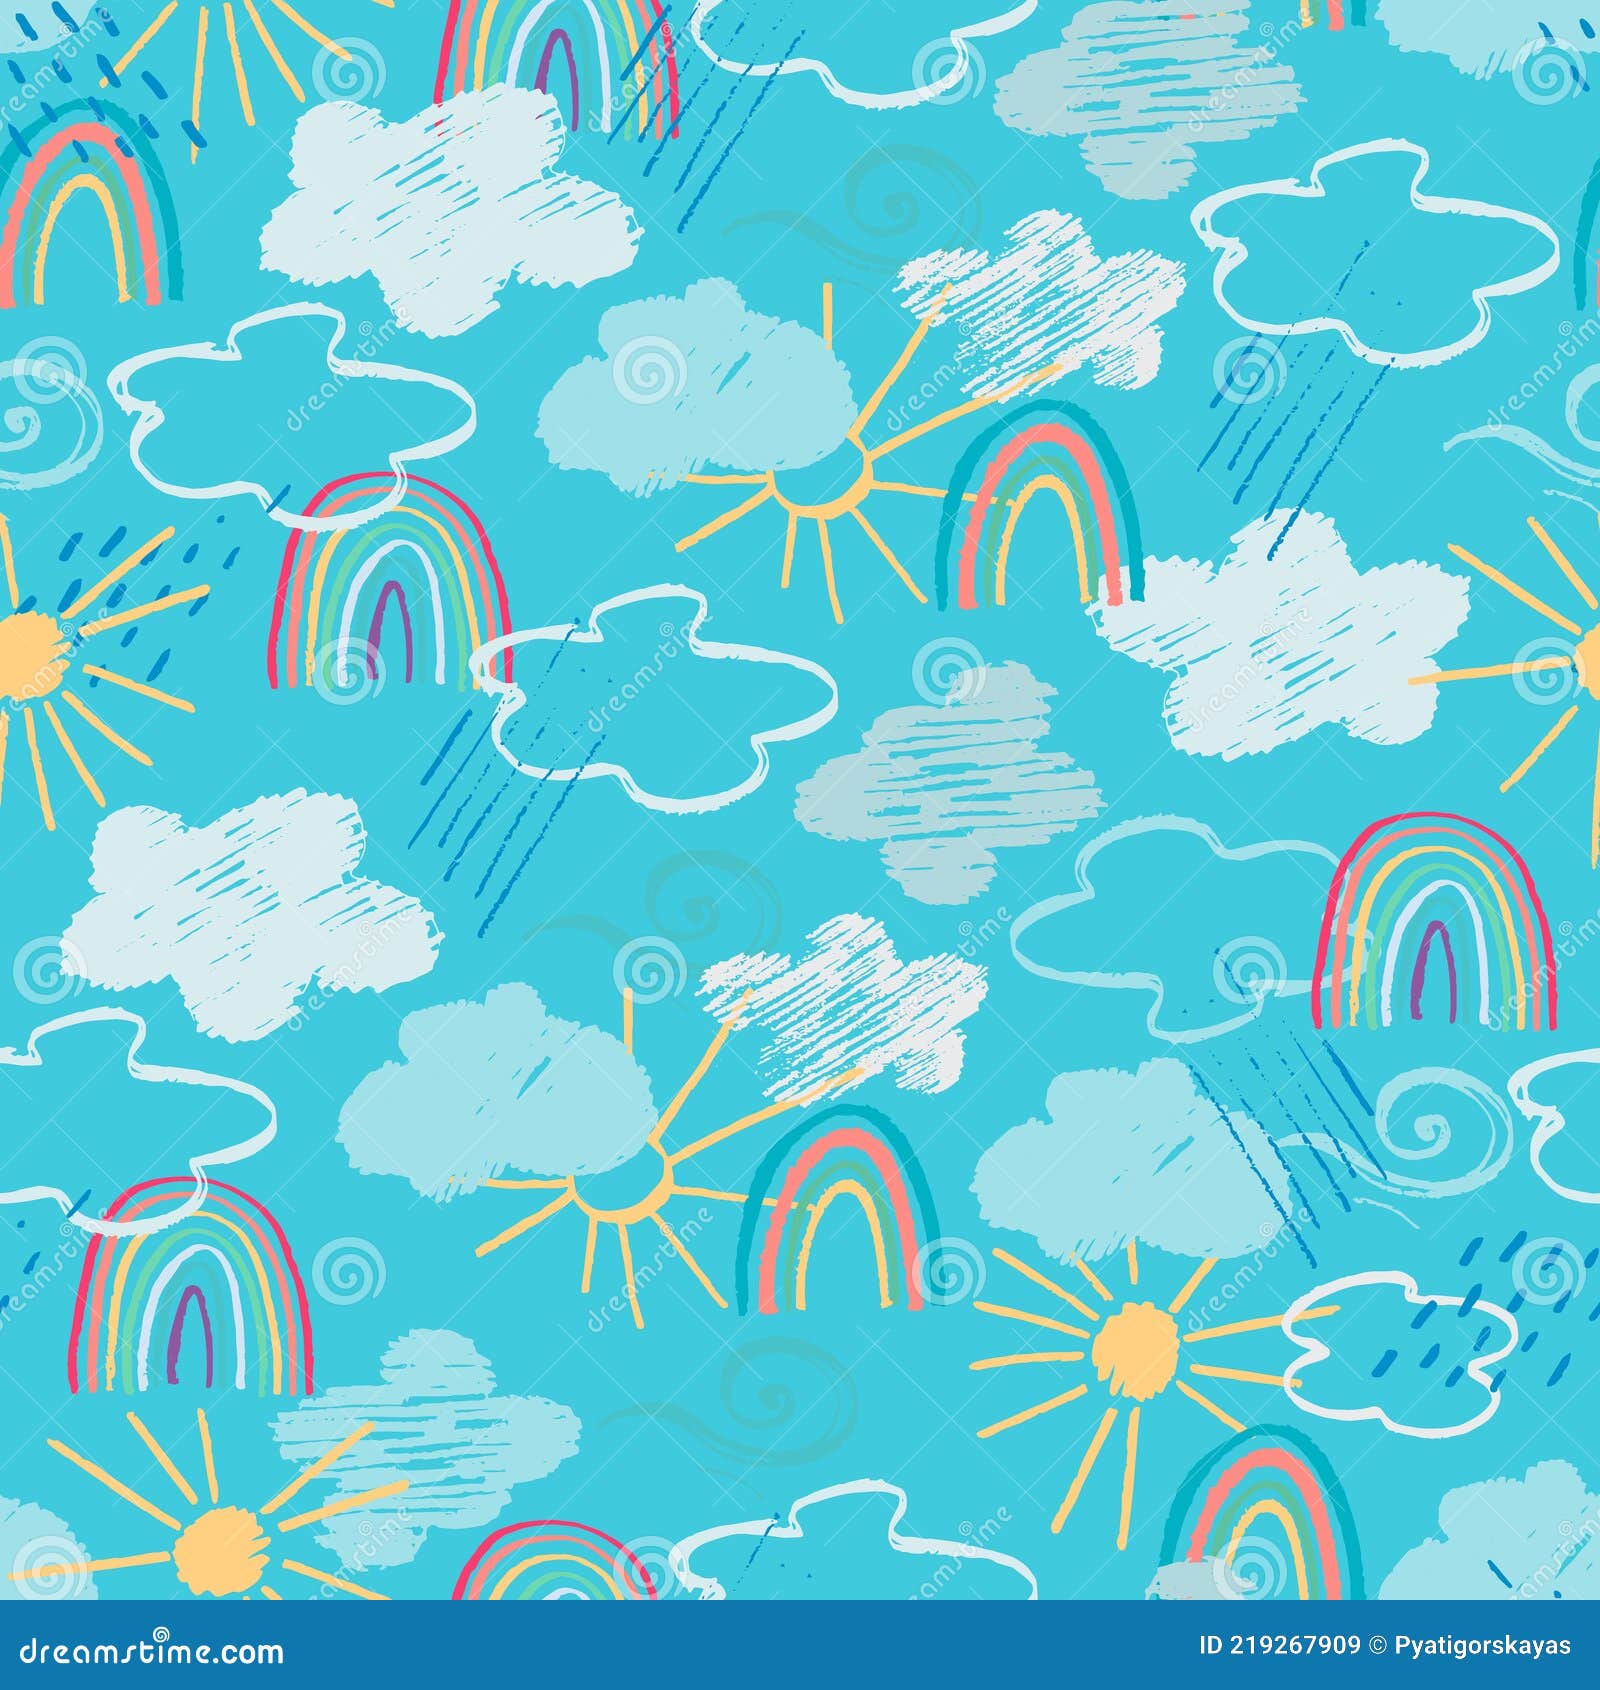 padrão perfeito com estrelas, sol kawaii, nuvens e arco-íris